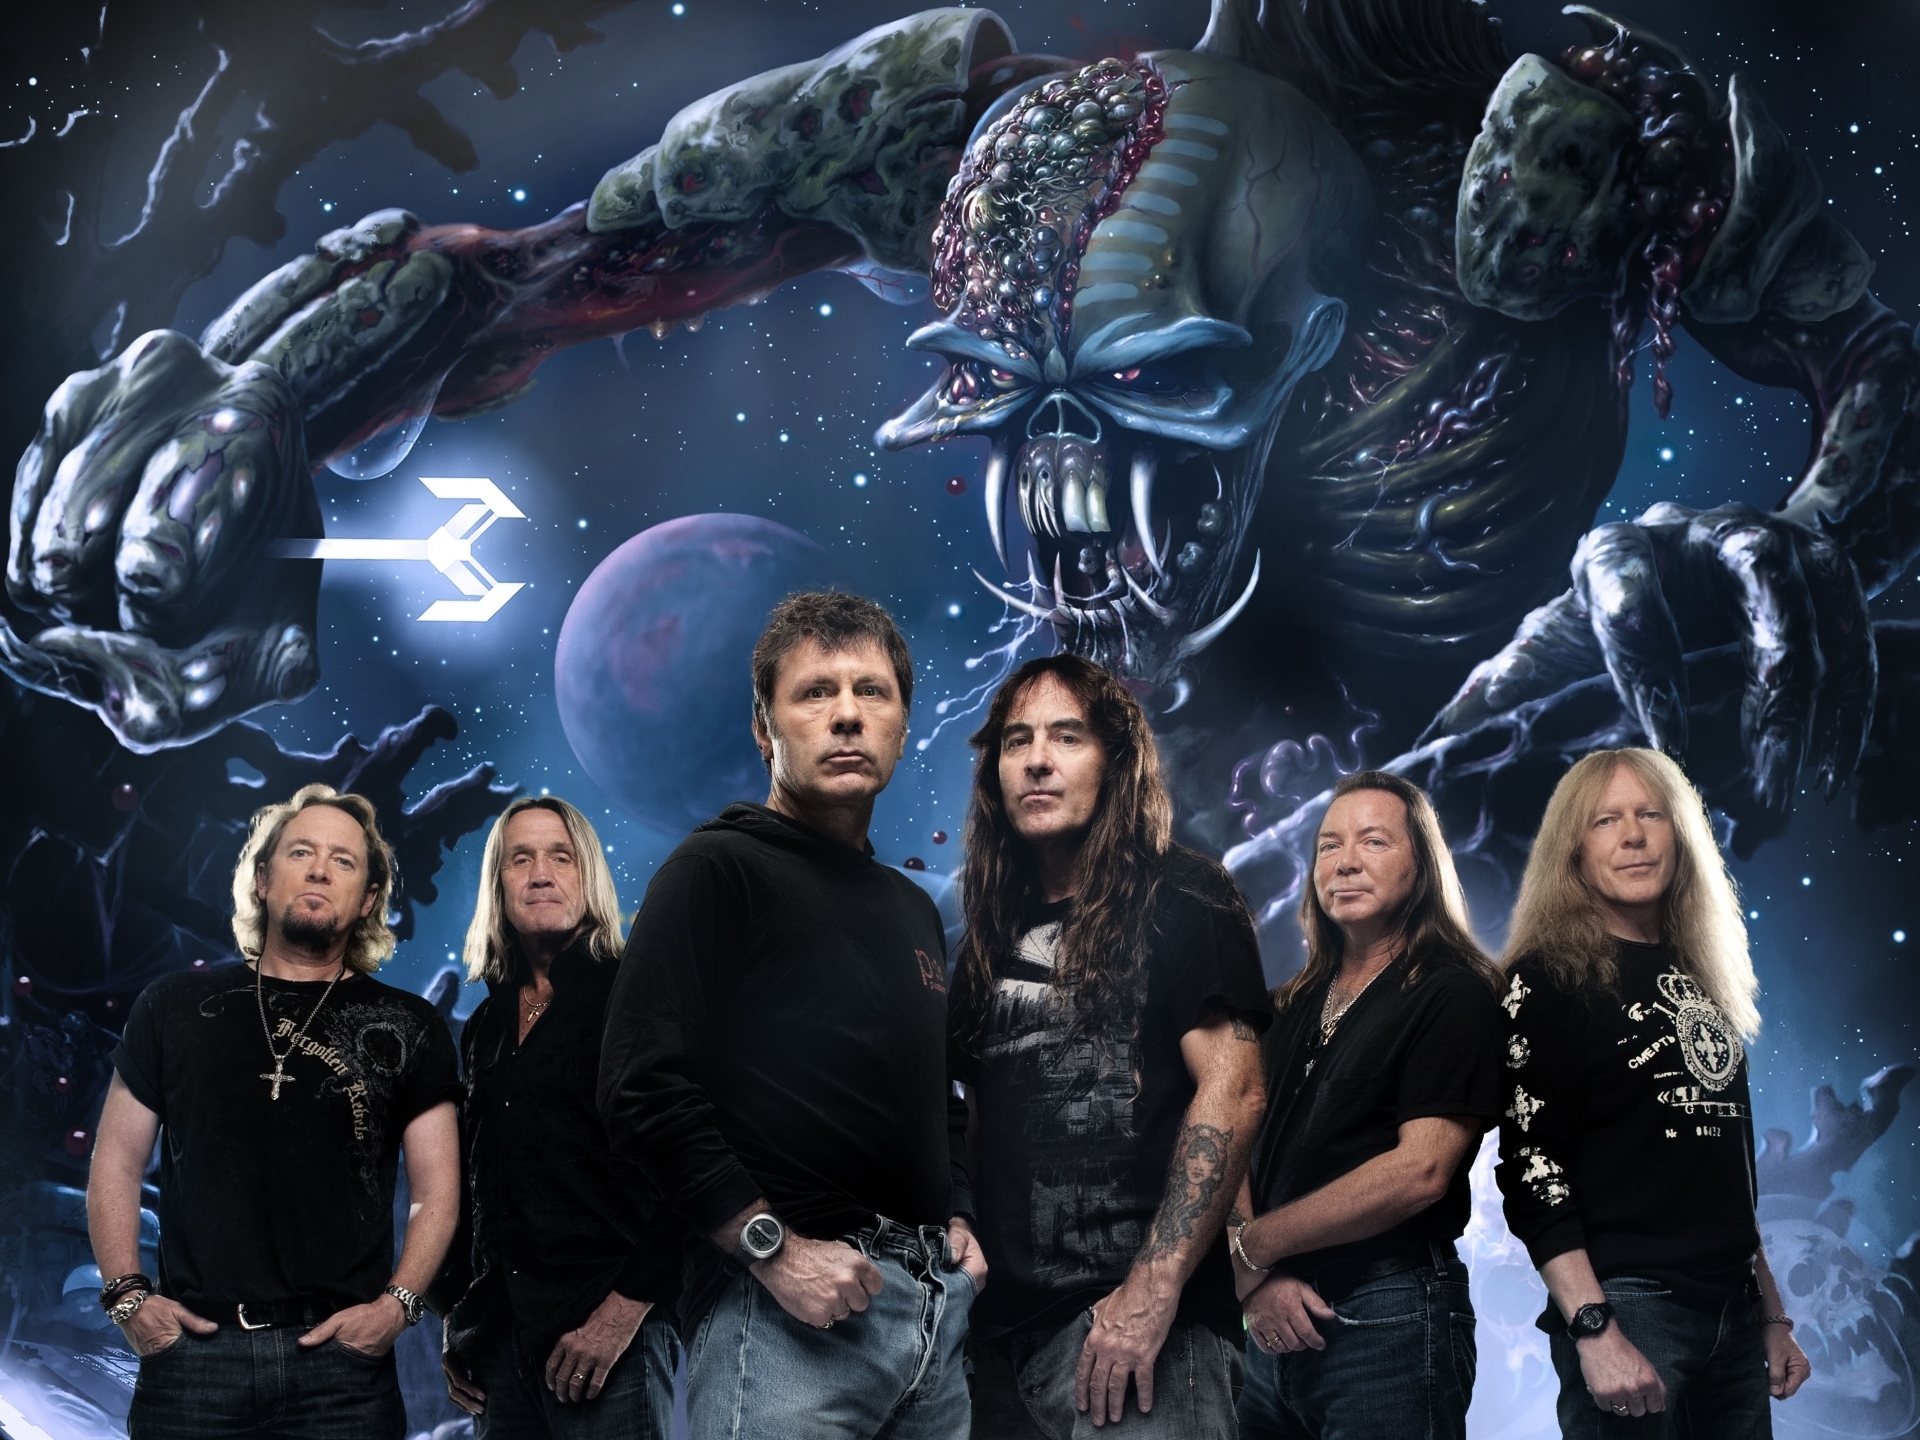 Iron Maiden Wallpaper Photo